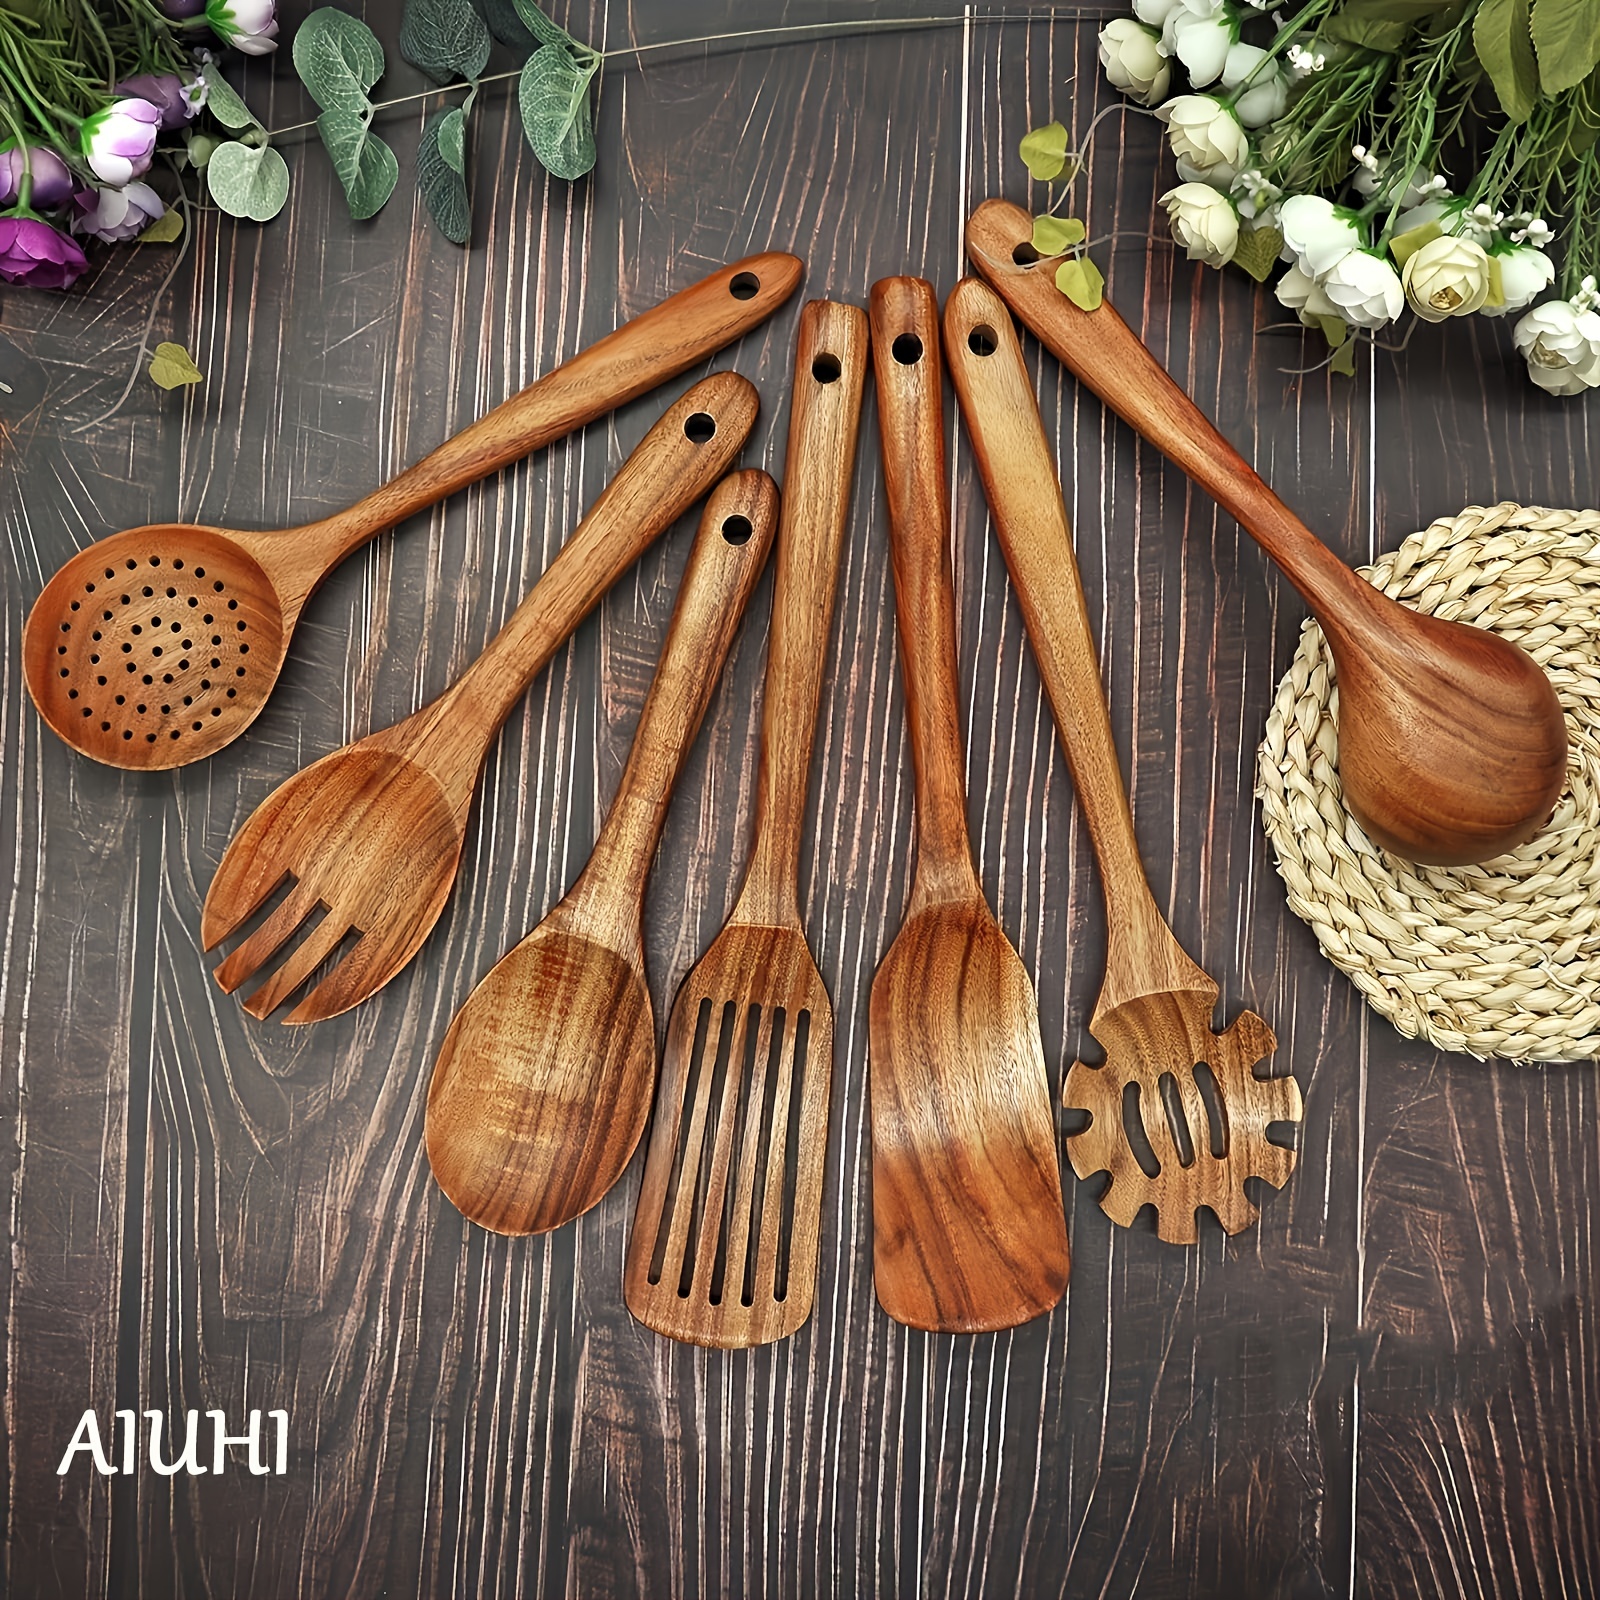 Handmade Wooden Spoon Set, Wooden Kitchen Utensils︱ - La Tiendita Tulum